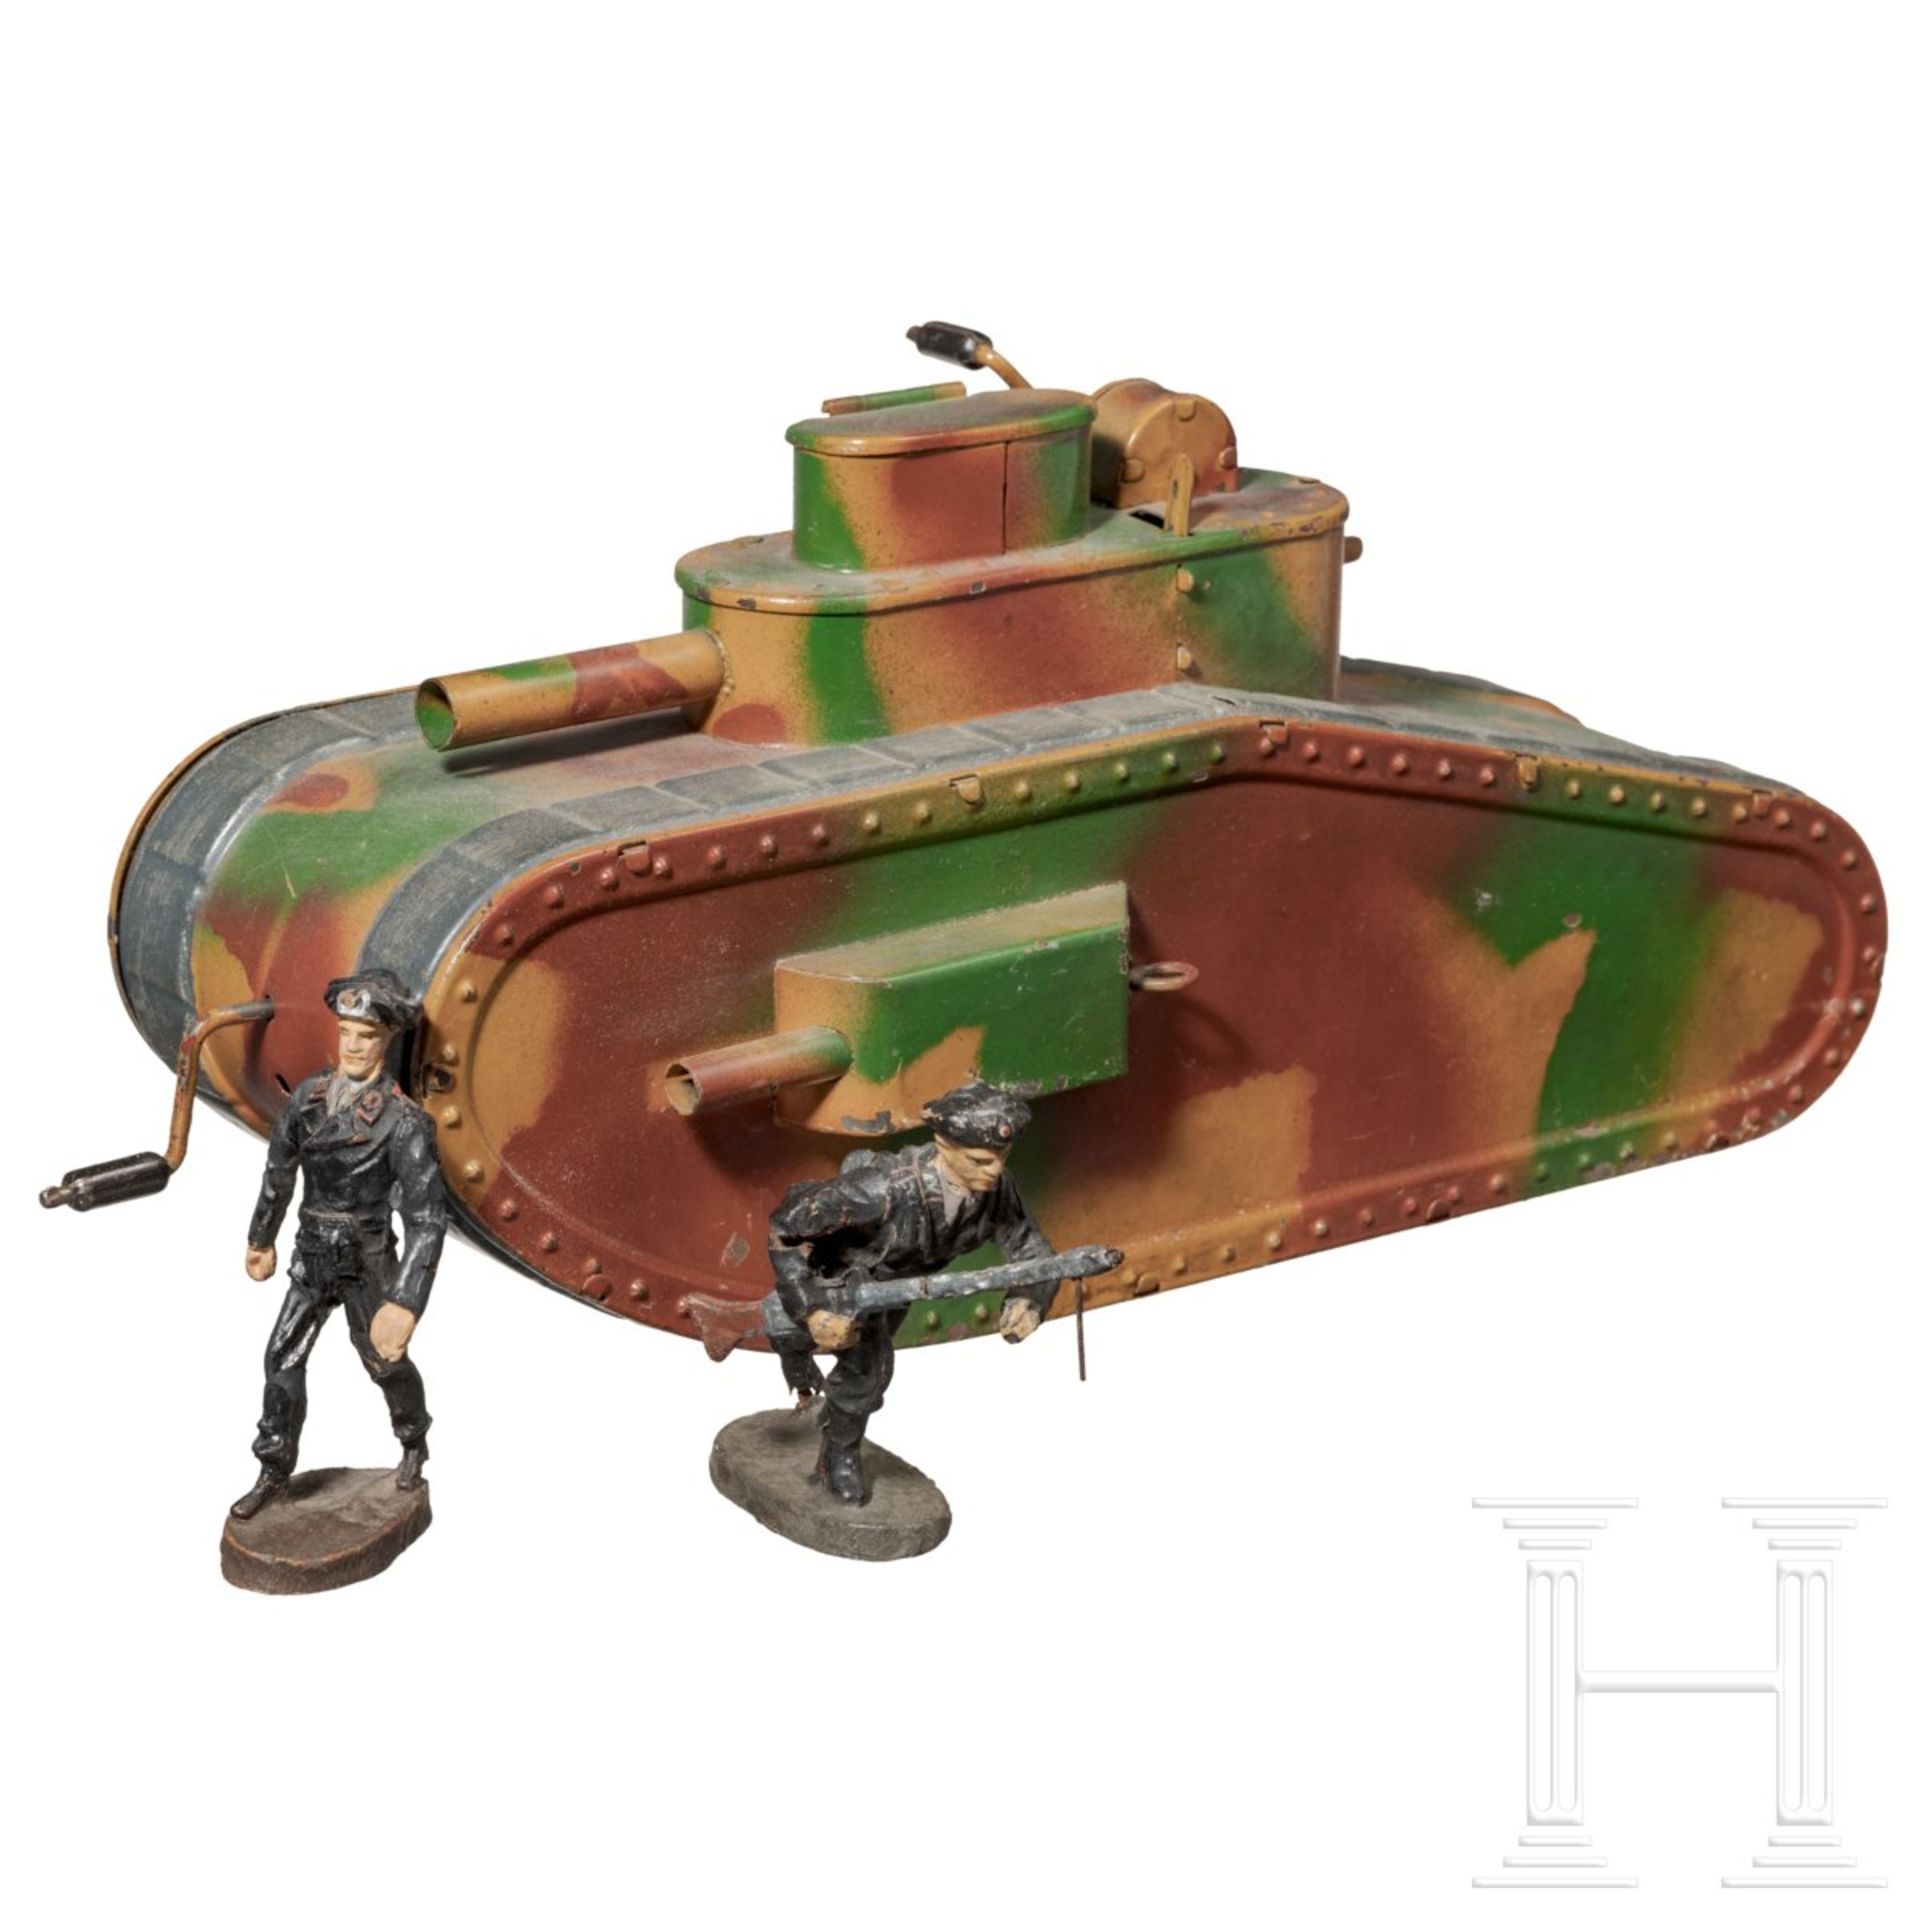 <de>Hausser-Tank 0/730 mimikry mit zwei Elastolin-Panzersoldaten<br>Hausser-Tank 0/730, Blech-Massea